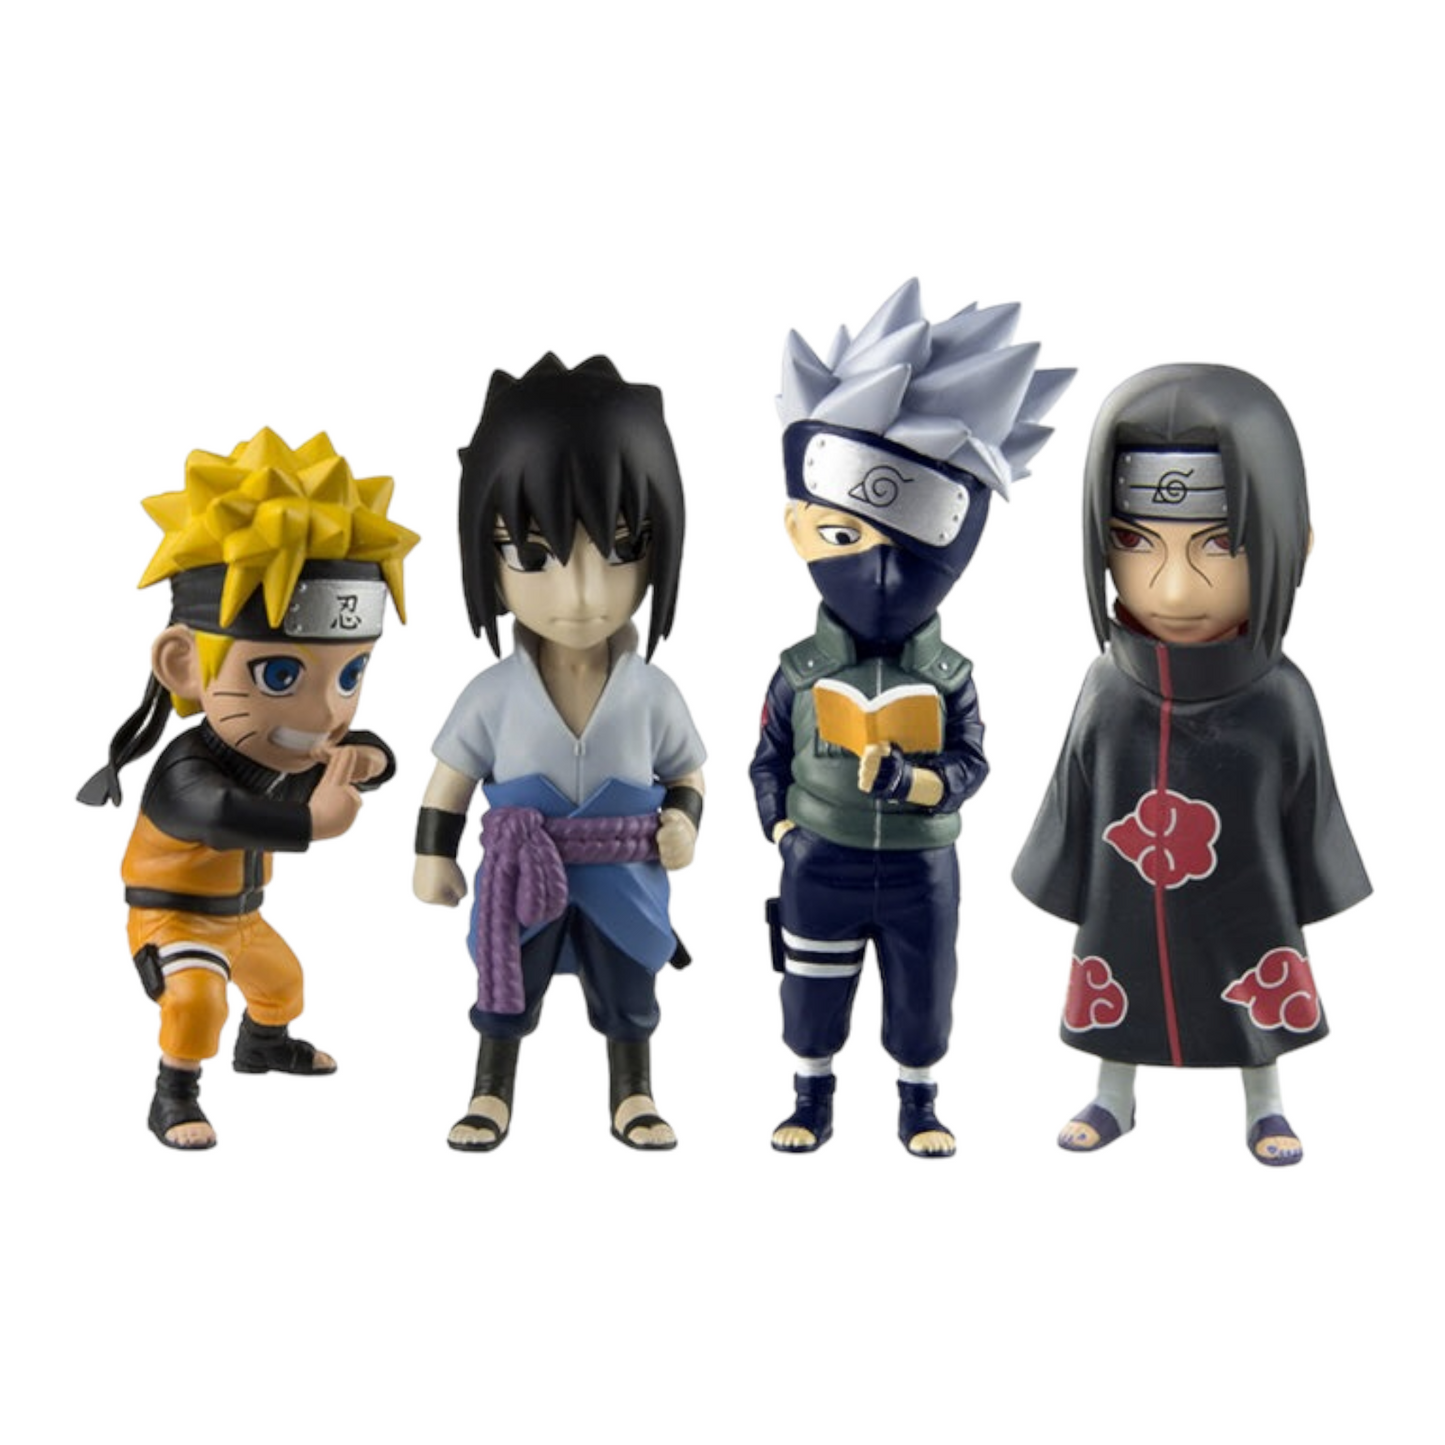 Naruto: Shippuden Mininja Series 1